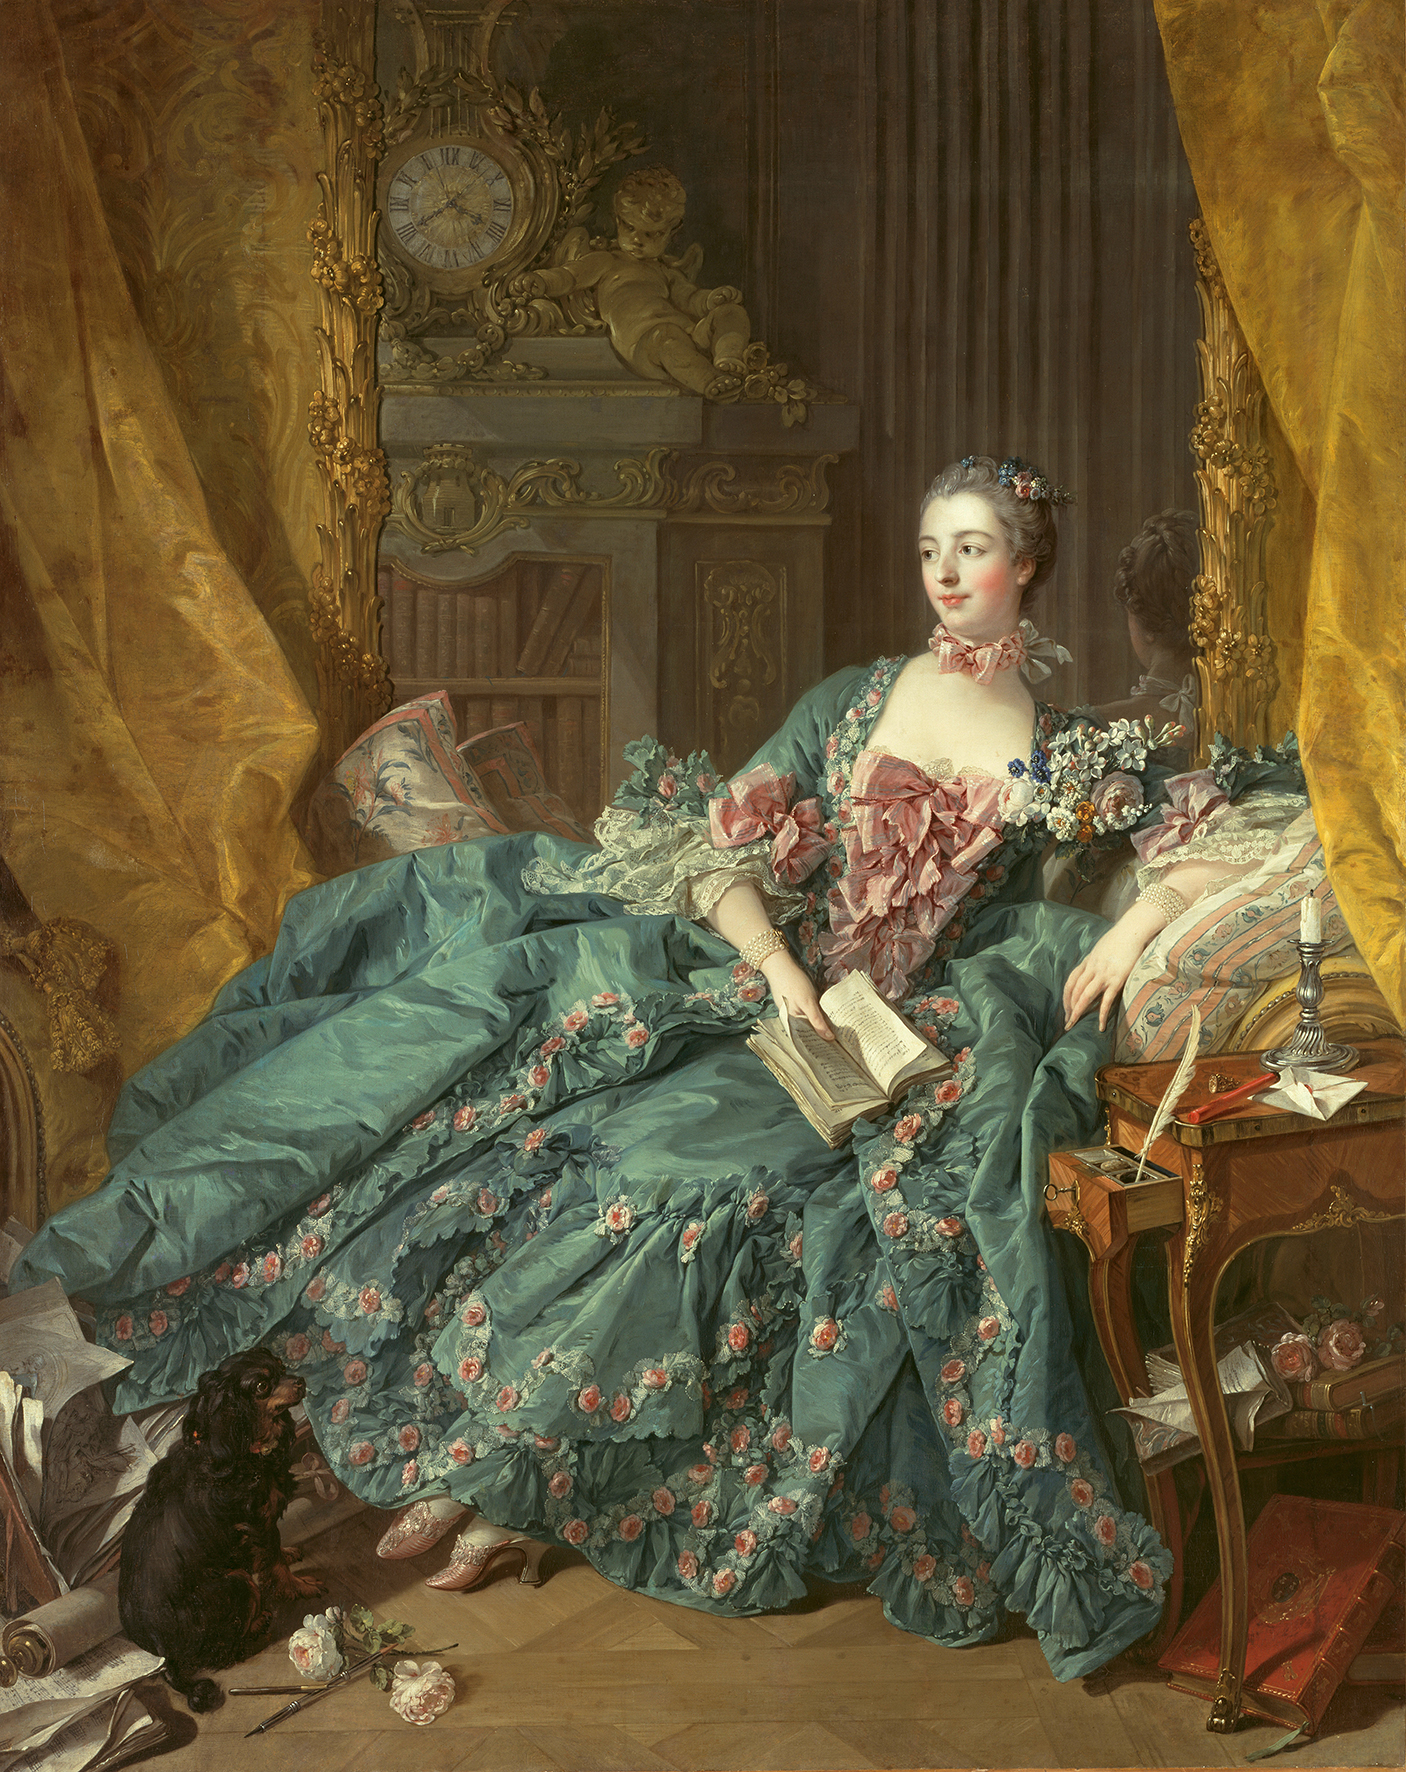 Abbildung von François Boucher, Madame de Pompadour von 1756. Es zeugt eine Frau, die ein opulentes Barockkleid trägt. In ihrer Hand hält sie ein Buch.